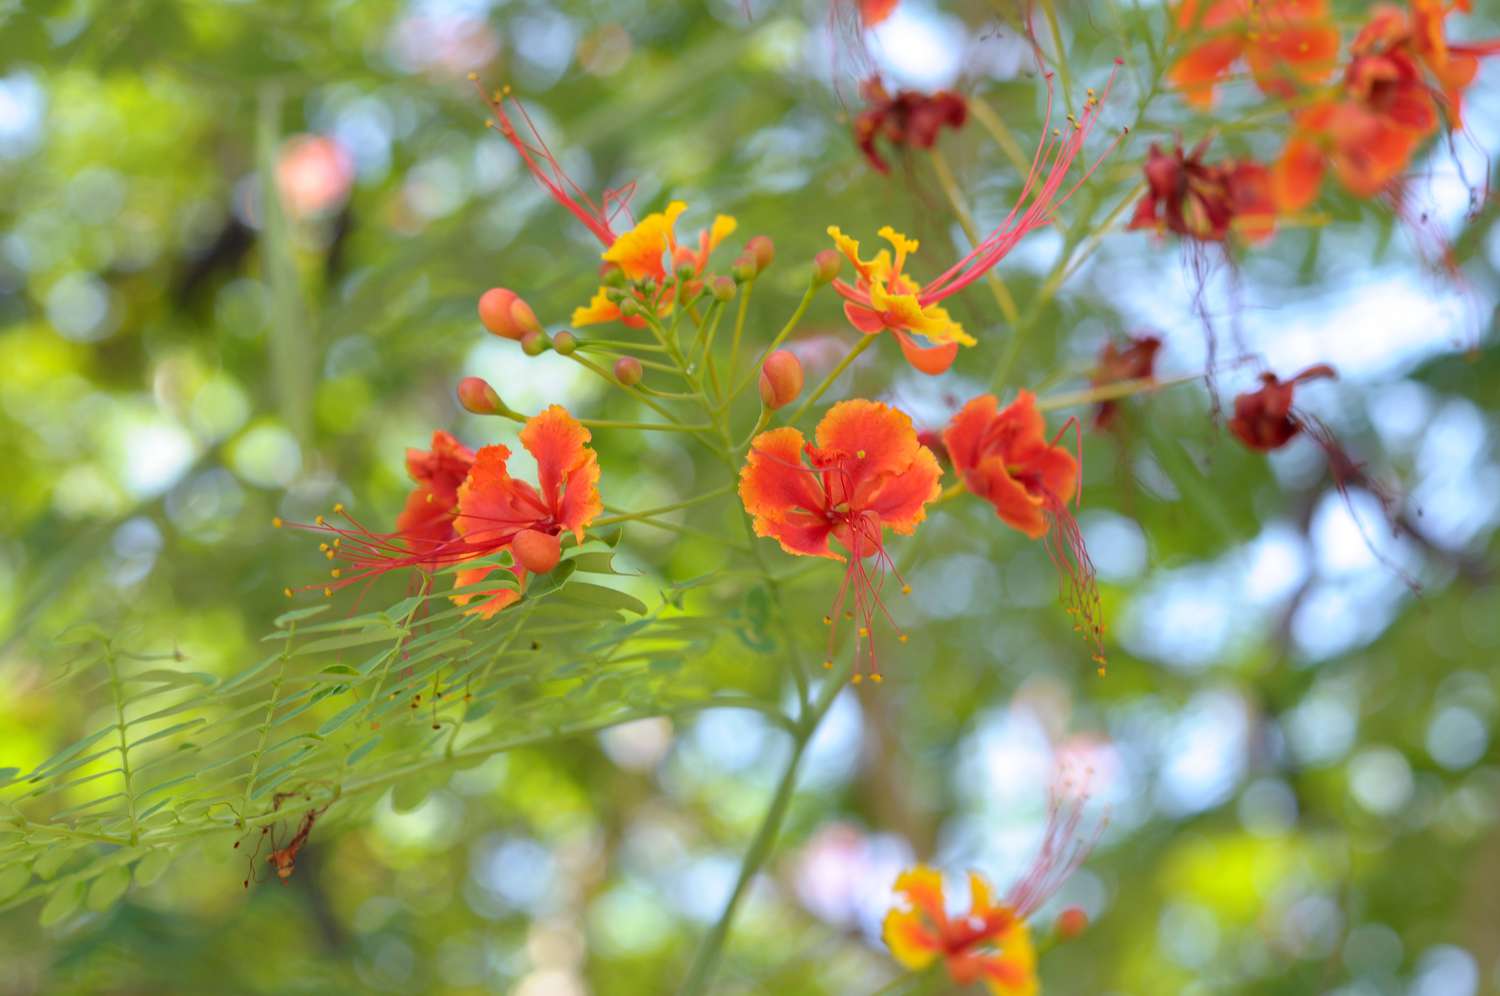 Rama de arbusto de ave del paraíso roja con pequeñas flores rojo-anaranjadas